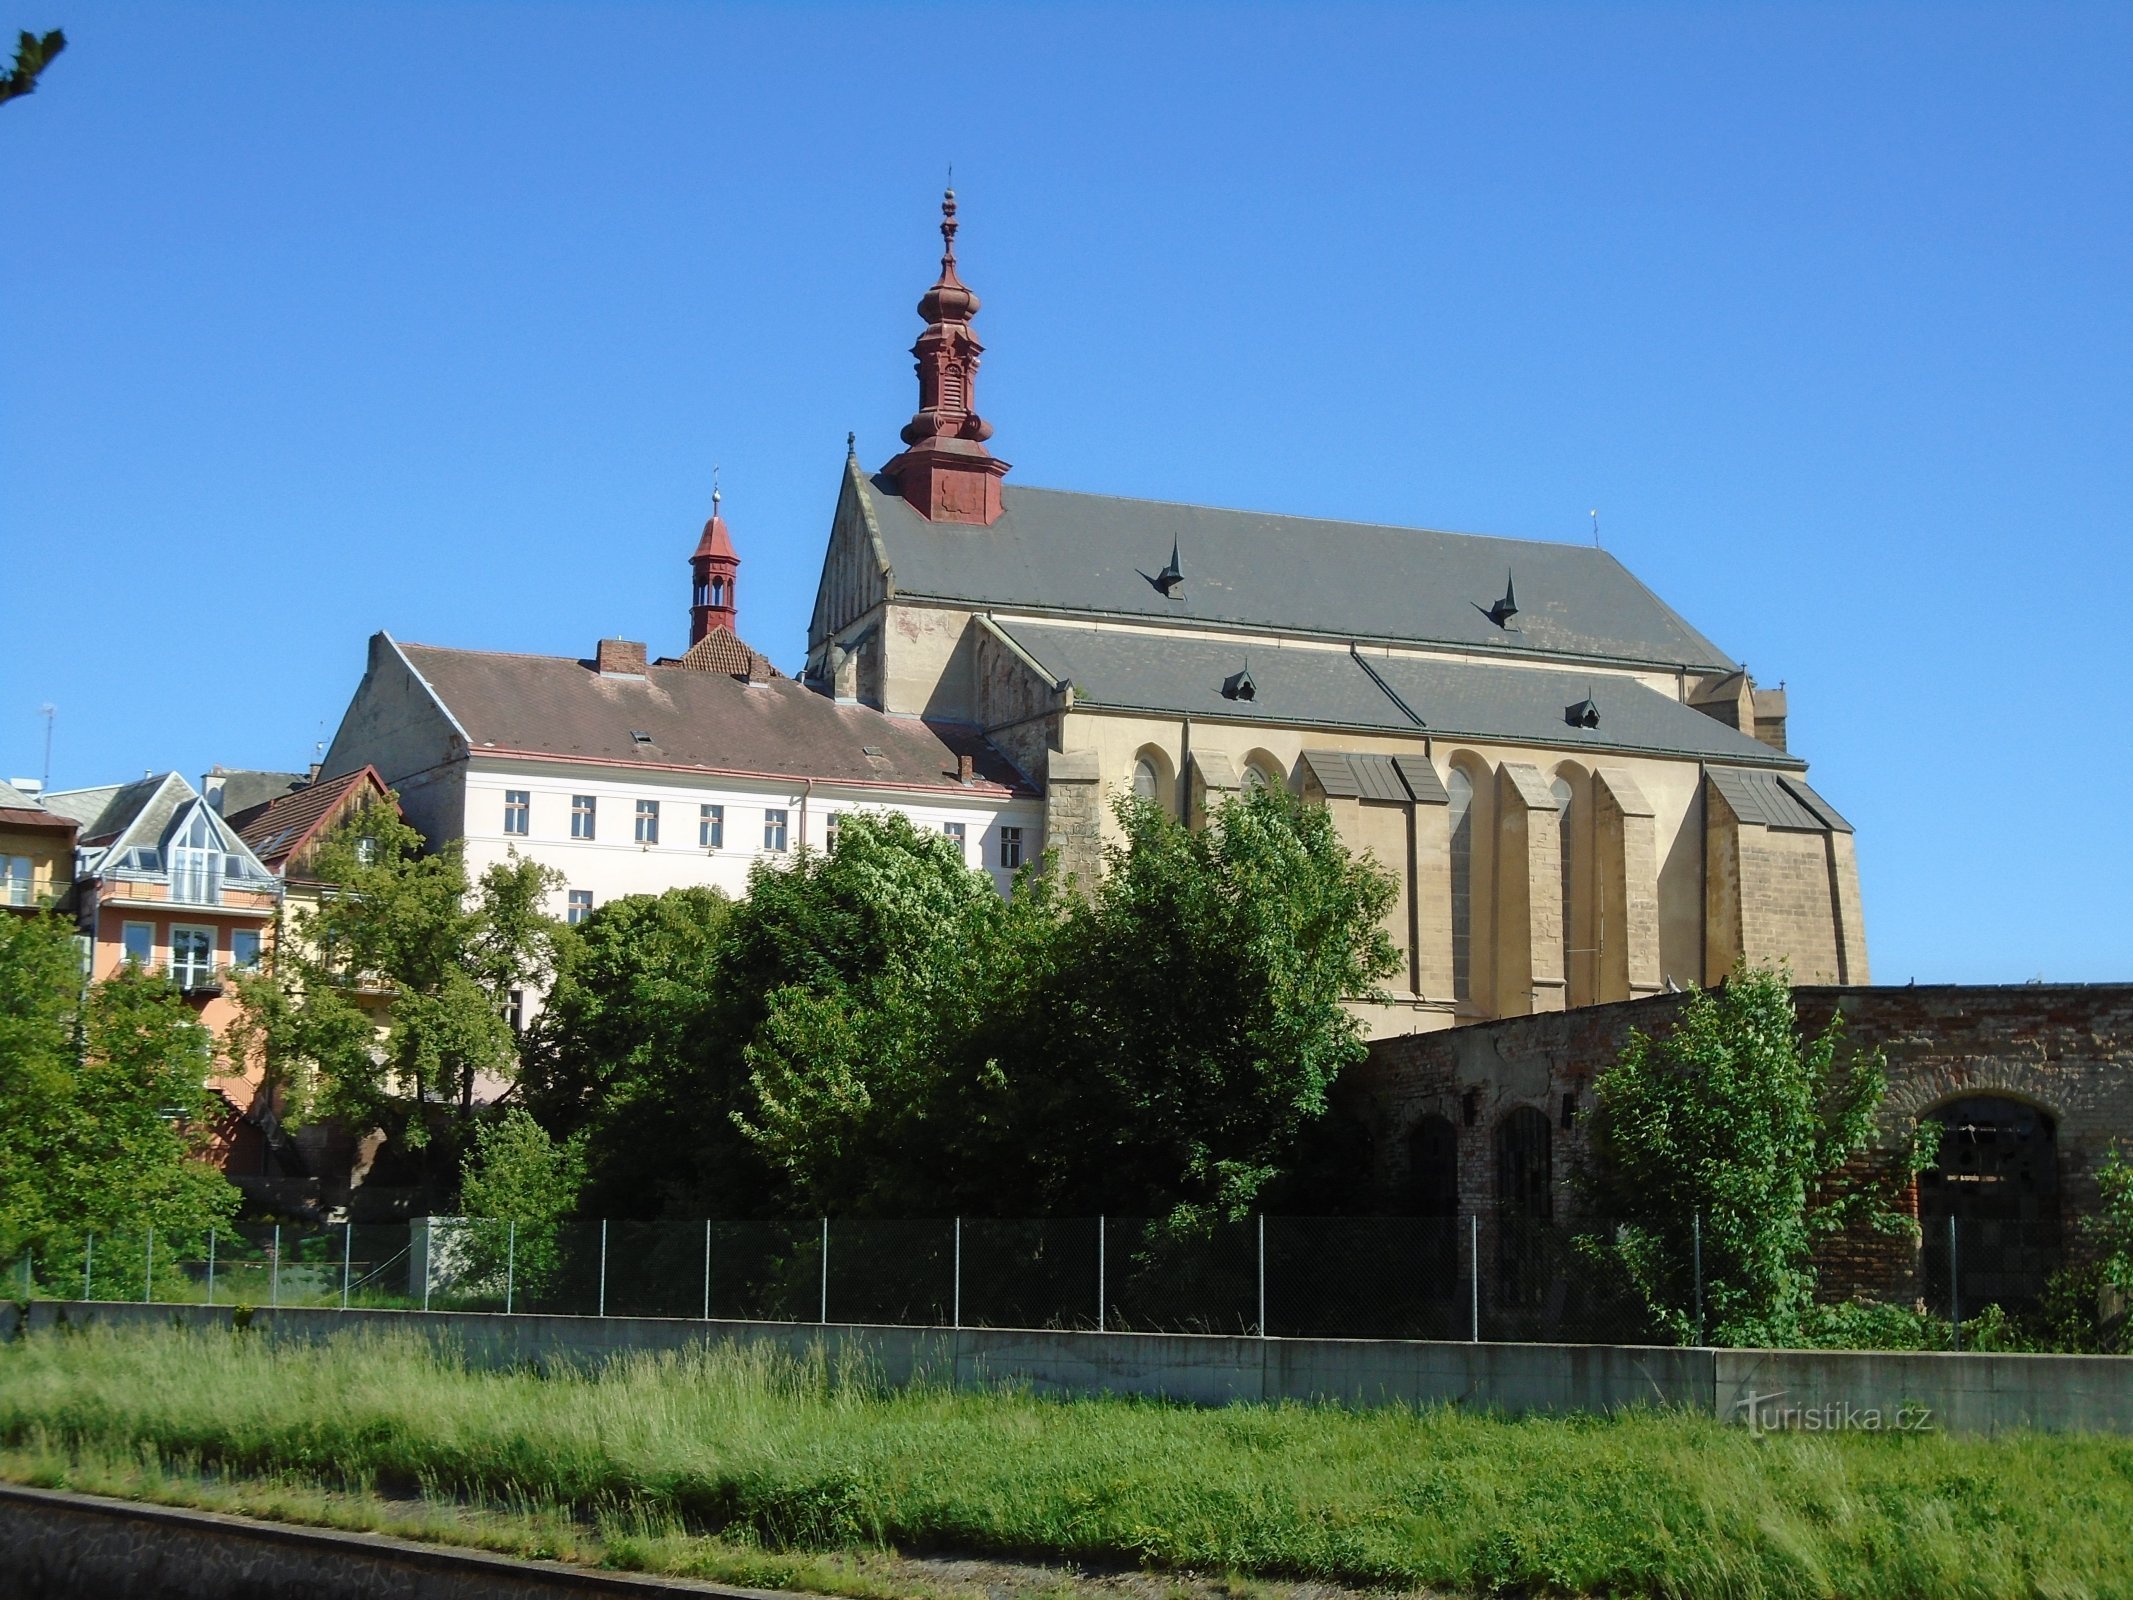 Kerk van St. Nicolaas, bisschop (Jaroměř)